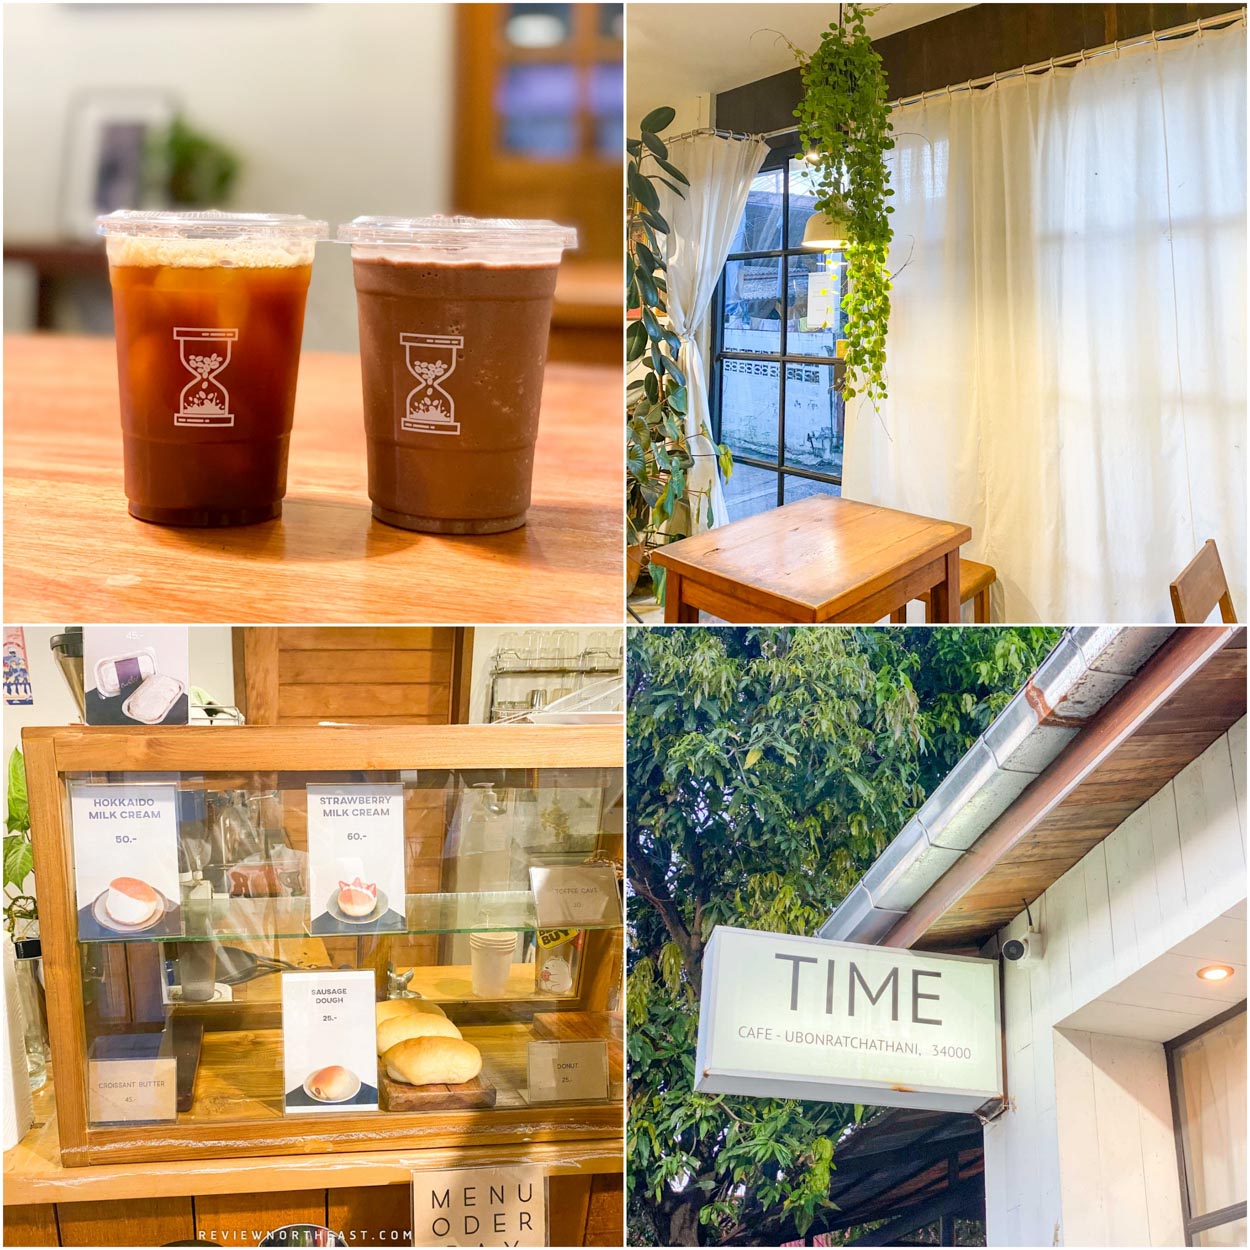 Time cafe คาเฟ่อุบลราชธานี โทนมินิมอลภายในร้านตกแต่งด้วยสีขาวสลับน้ำตาล